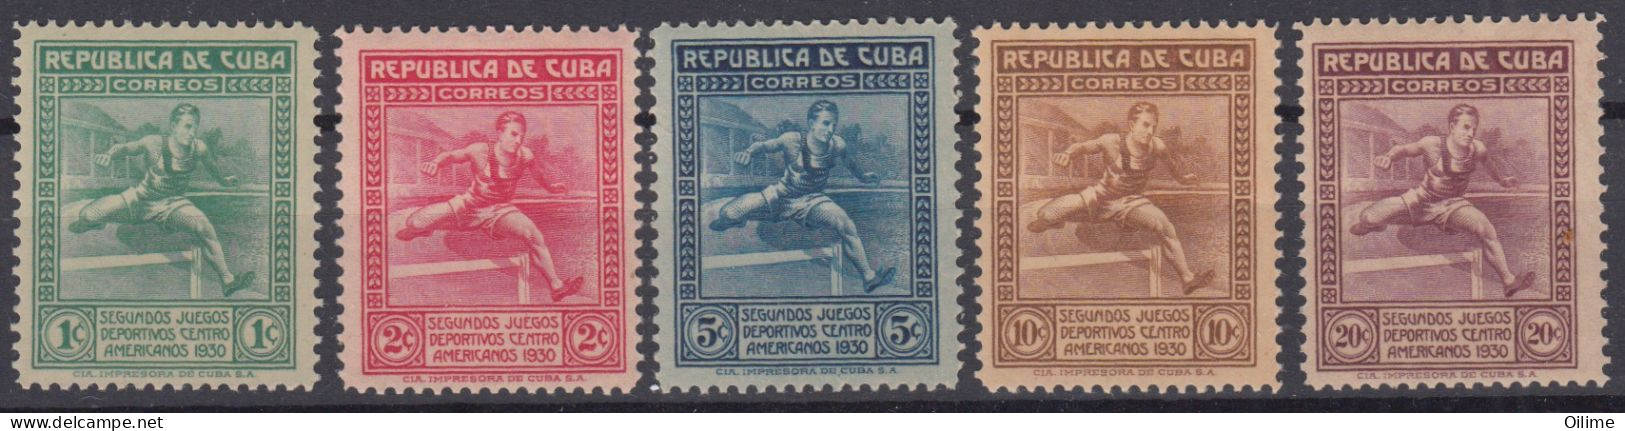 CUBA 1930. II JUEGOS DEPORTIVOS CENTROAMERICANOS. MNH. EDIFIL 239/43 - Unused Stamps